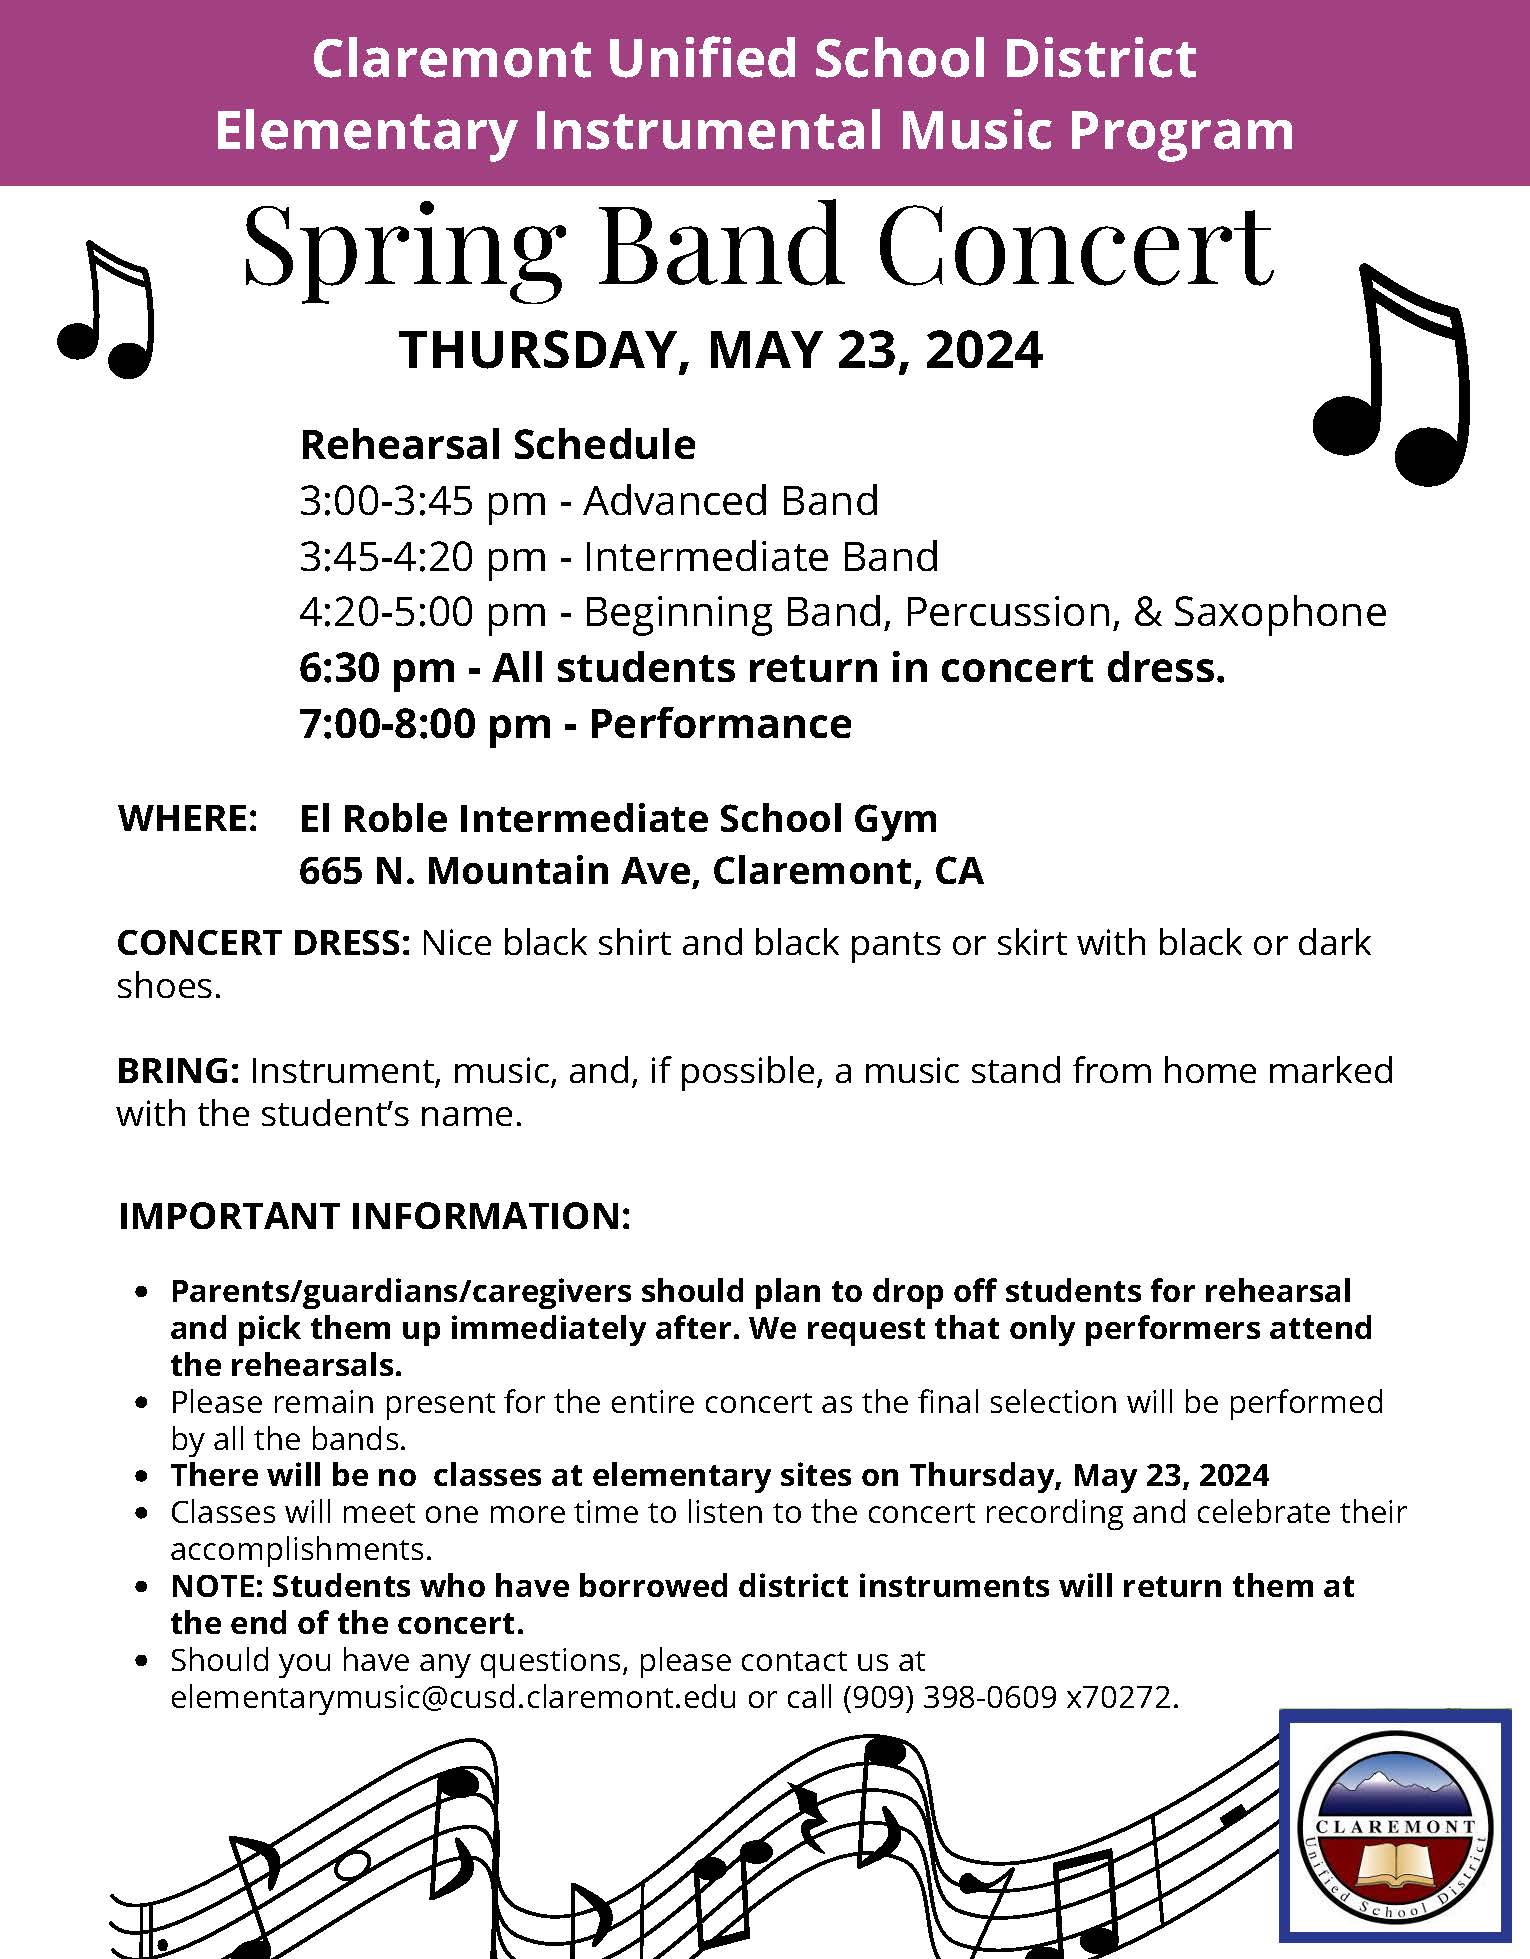 Spring BAND Concert Flyer 2024